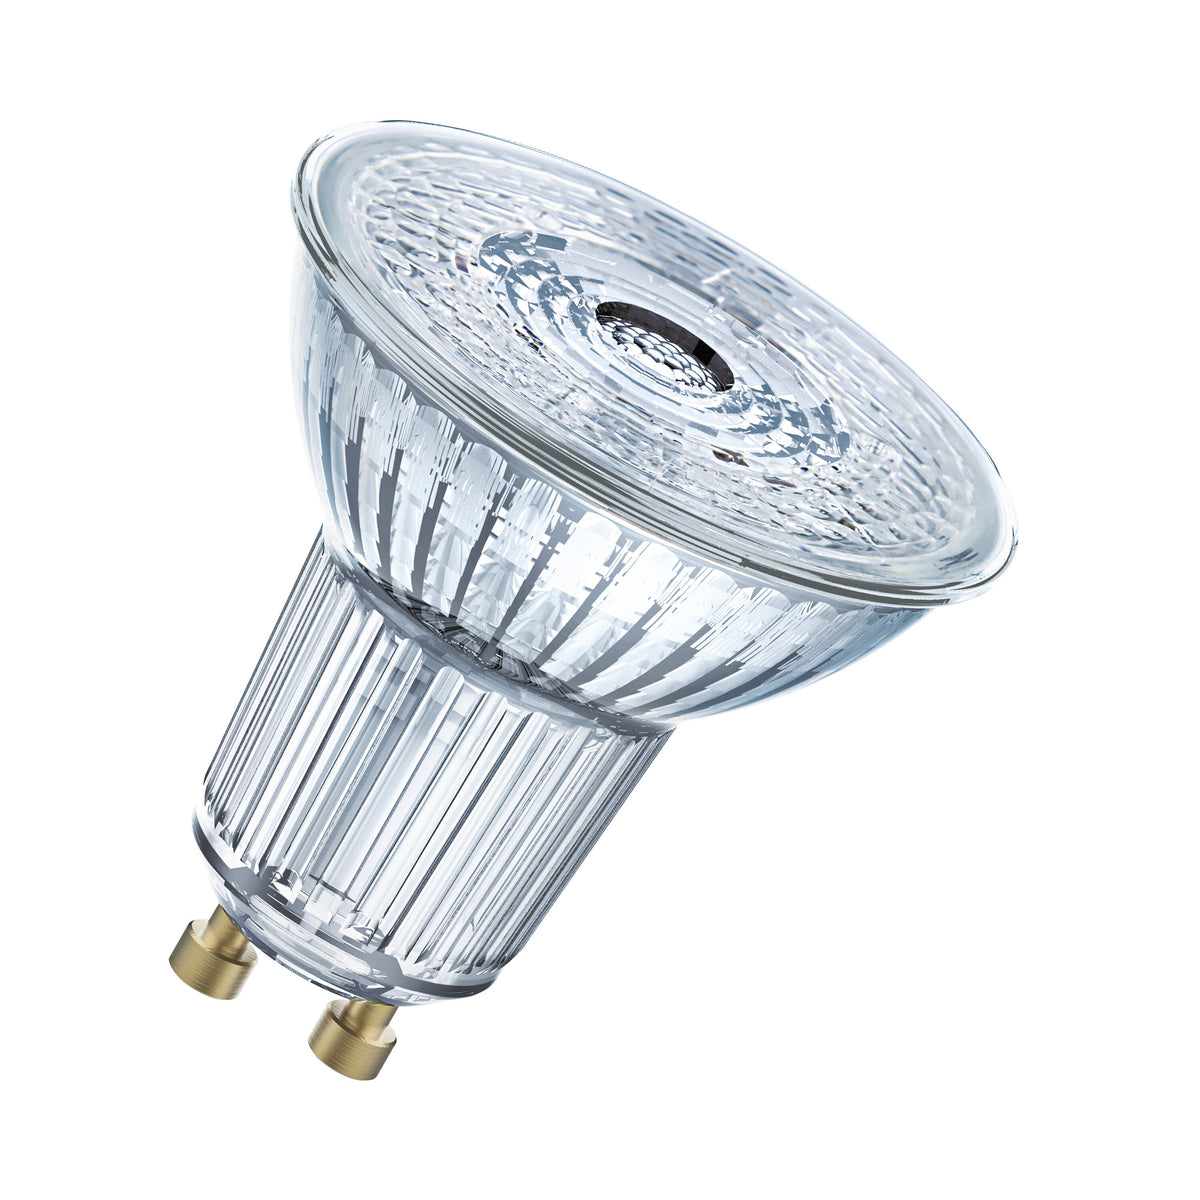 Lampada con riflettore LED OSRAM PAR16 dimmerabile con attacco GU10, bianco caldo (2700K), spot in vetro, 3,7 W, ricambio per lampada con riflettore da 35 W, LED SUPERSTAR PAR16